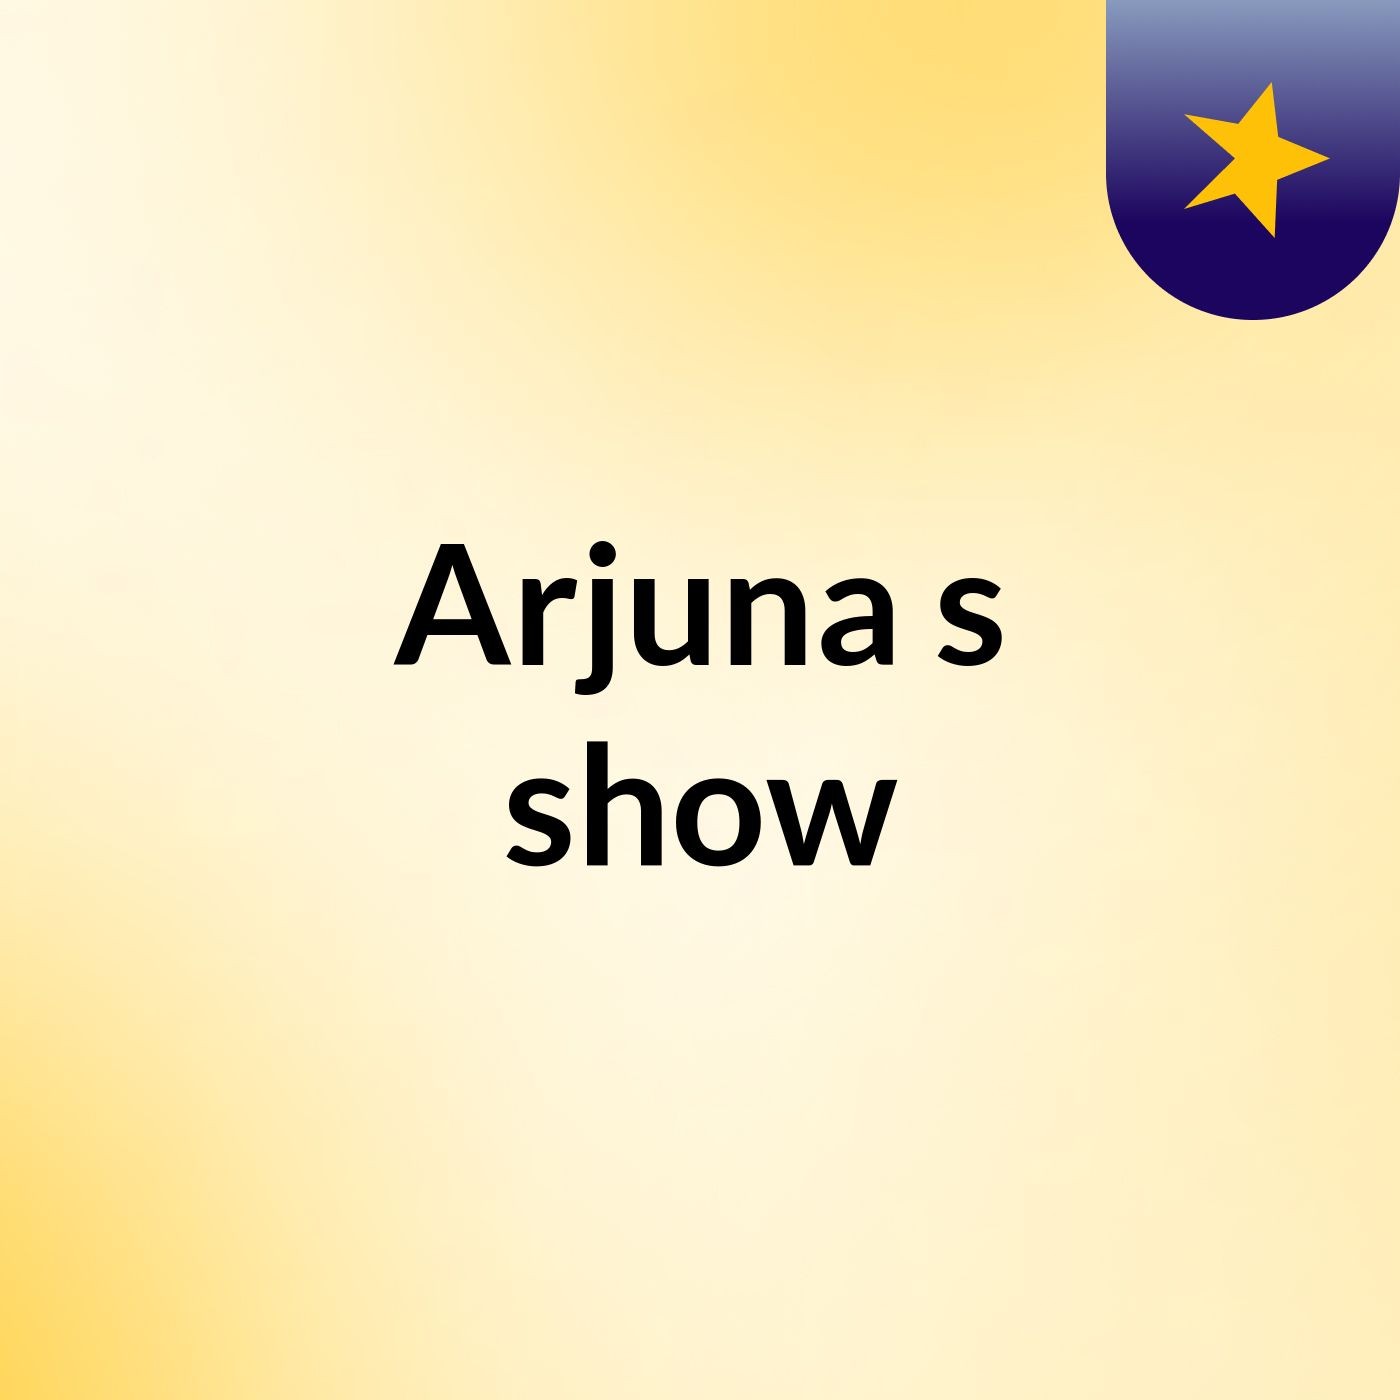 Arjuna's show